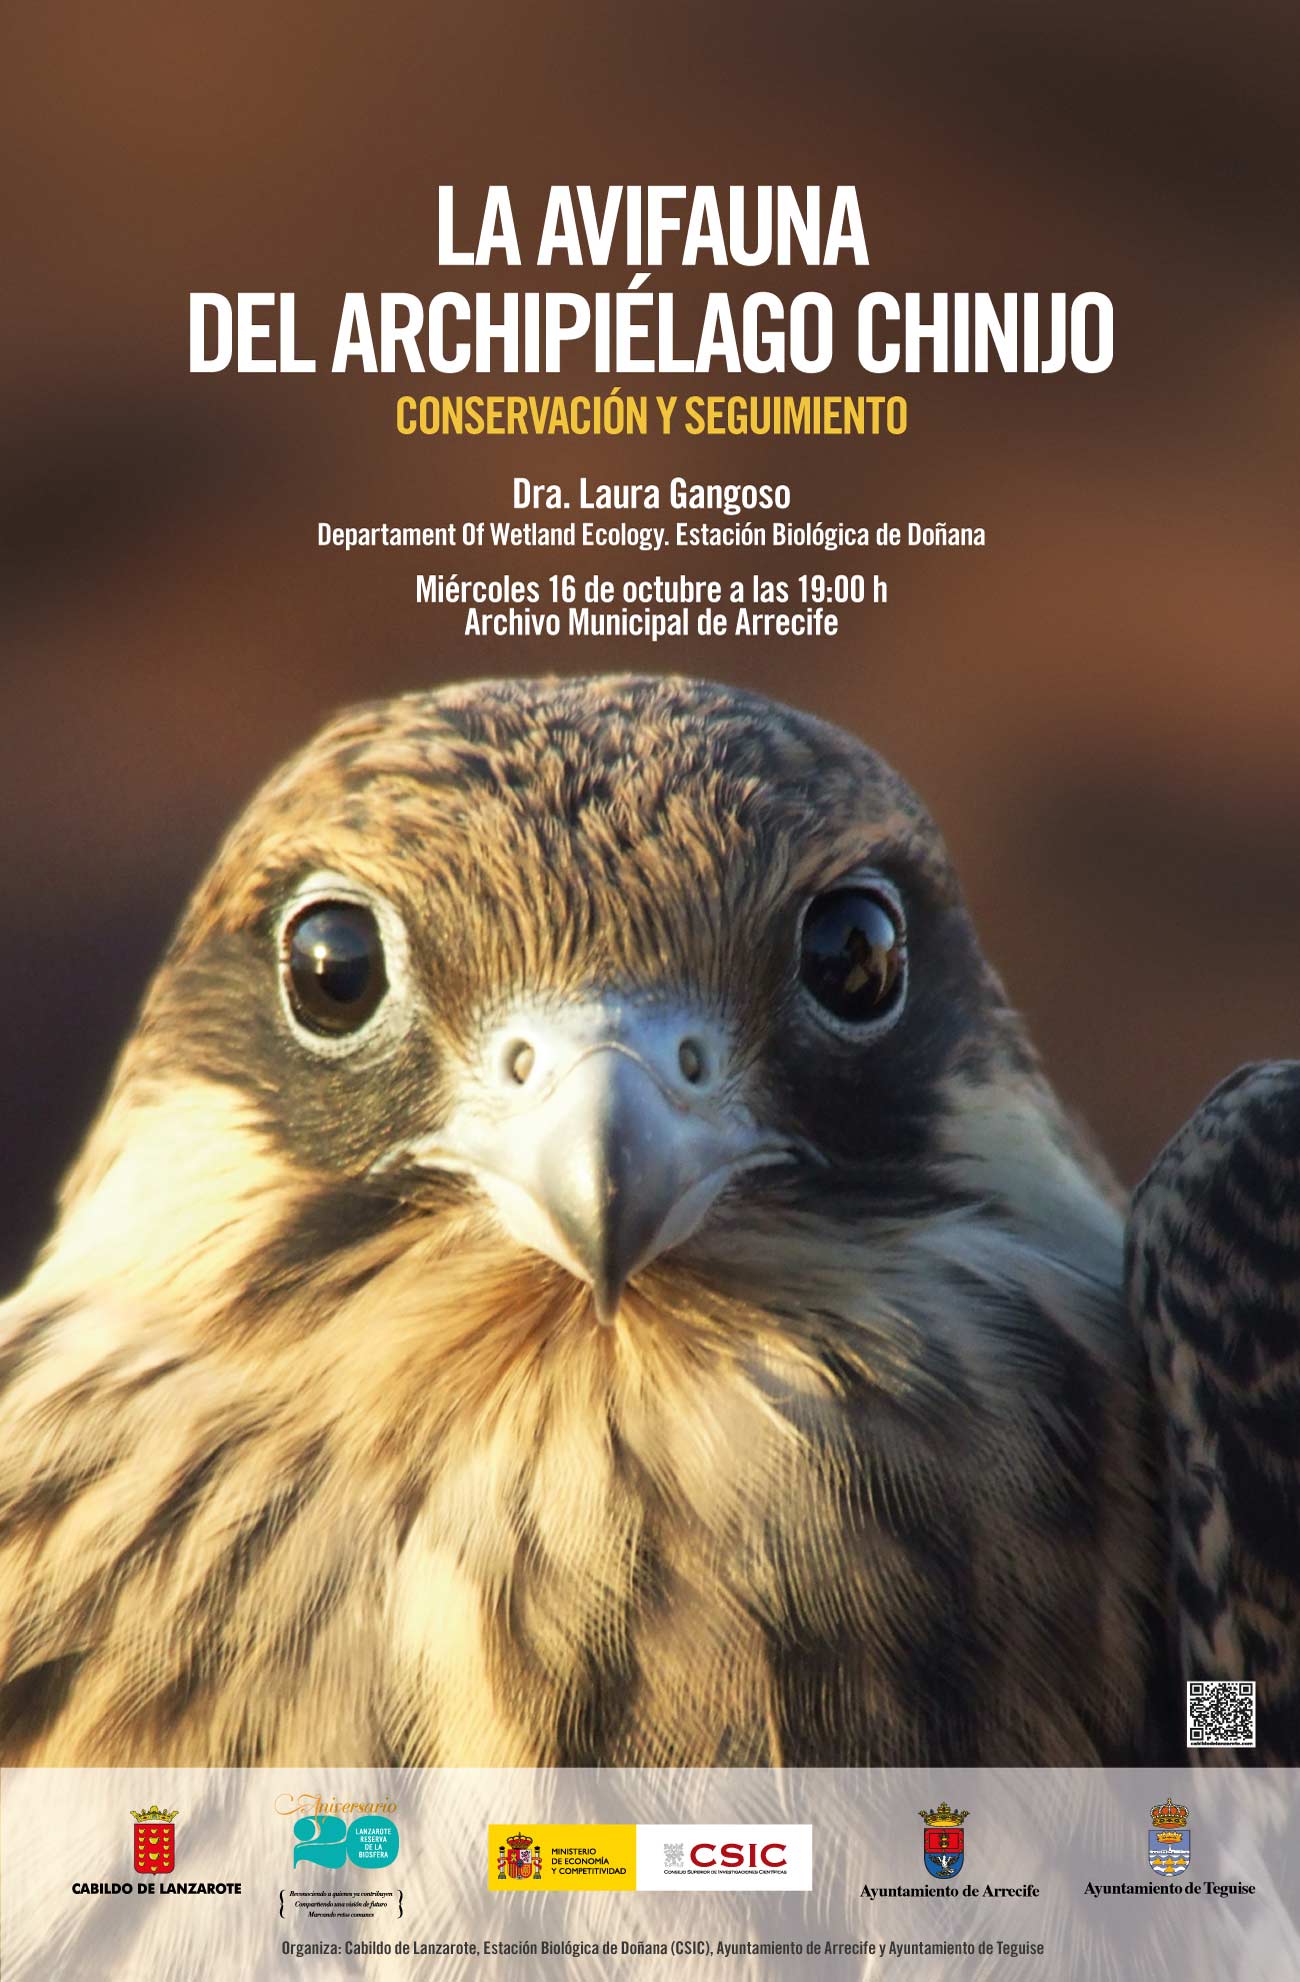 El Cabildo de Lanzarote organiza una conferencia sobre la avifauna del Archipiélago Chinijo